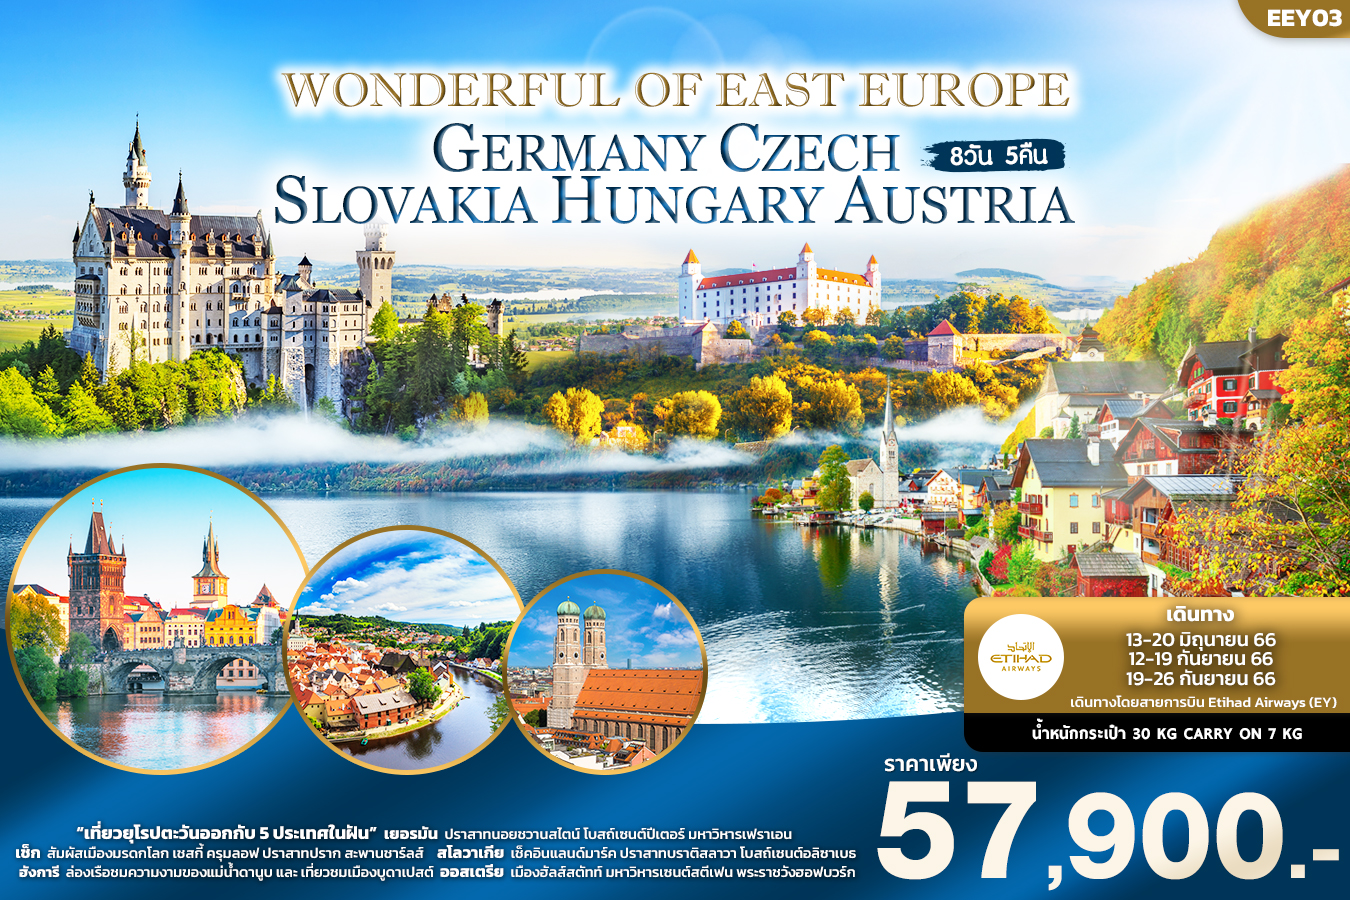 WONDERFUL OF EAST EUROPE GERMANY CZECH SLOVAKIA HUNGRY 